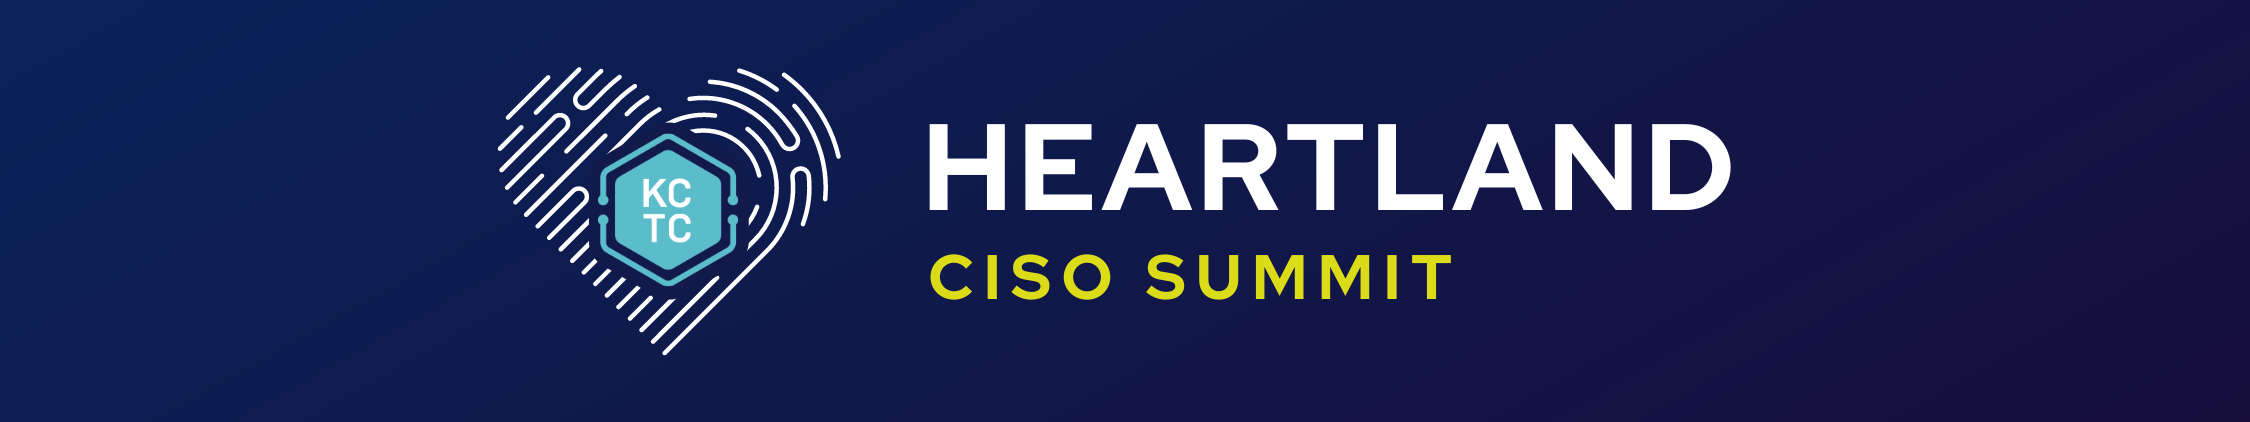 Heartland CISO Summit